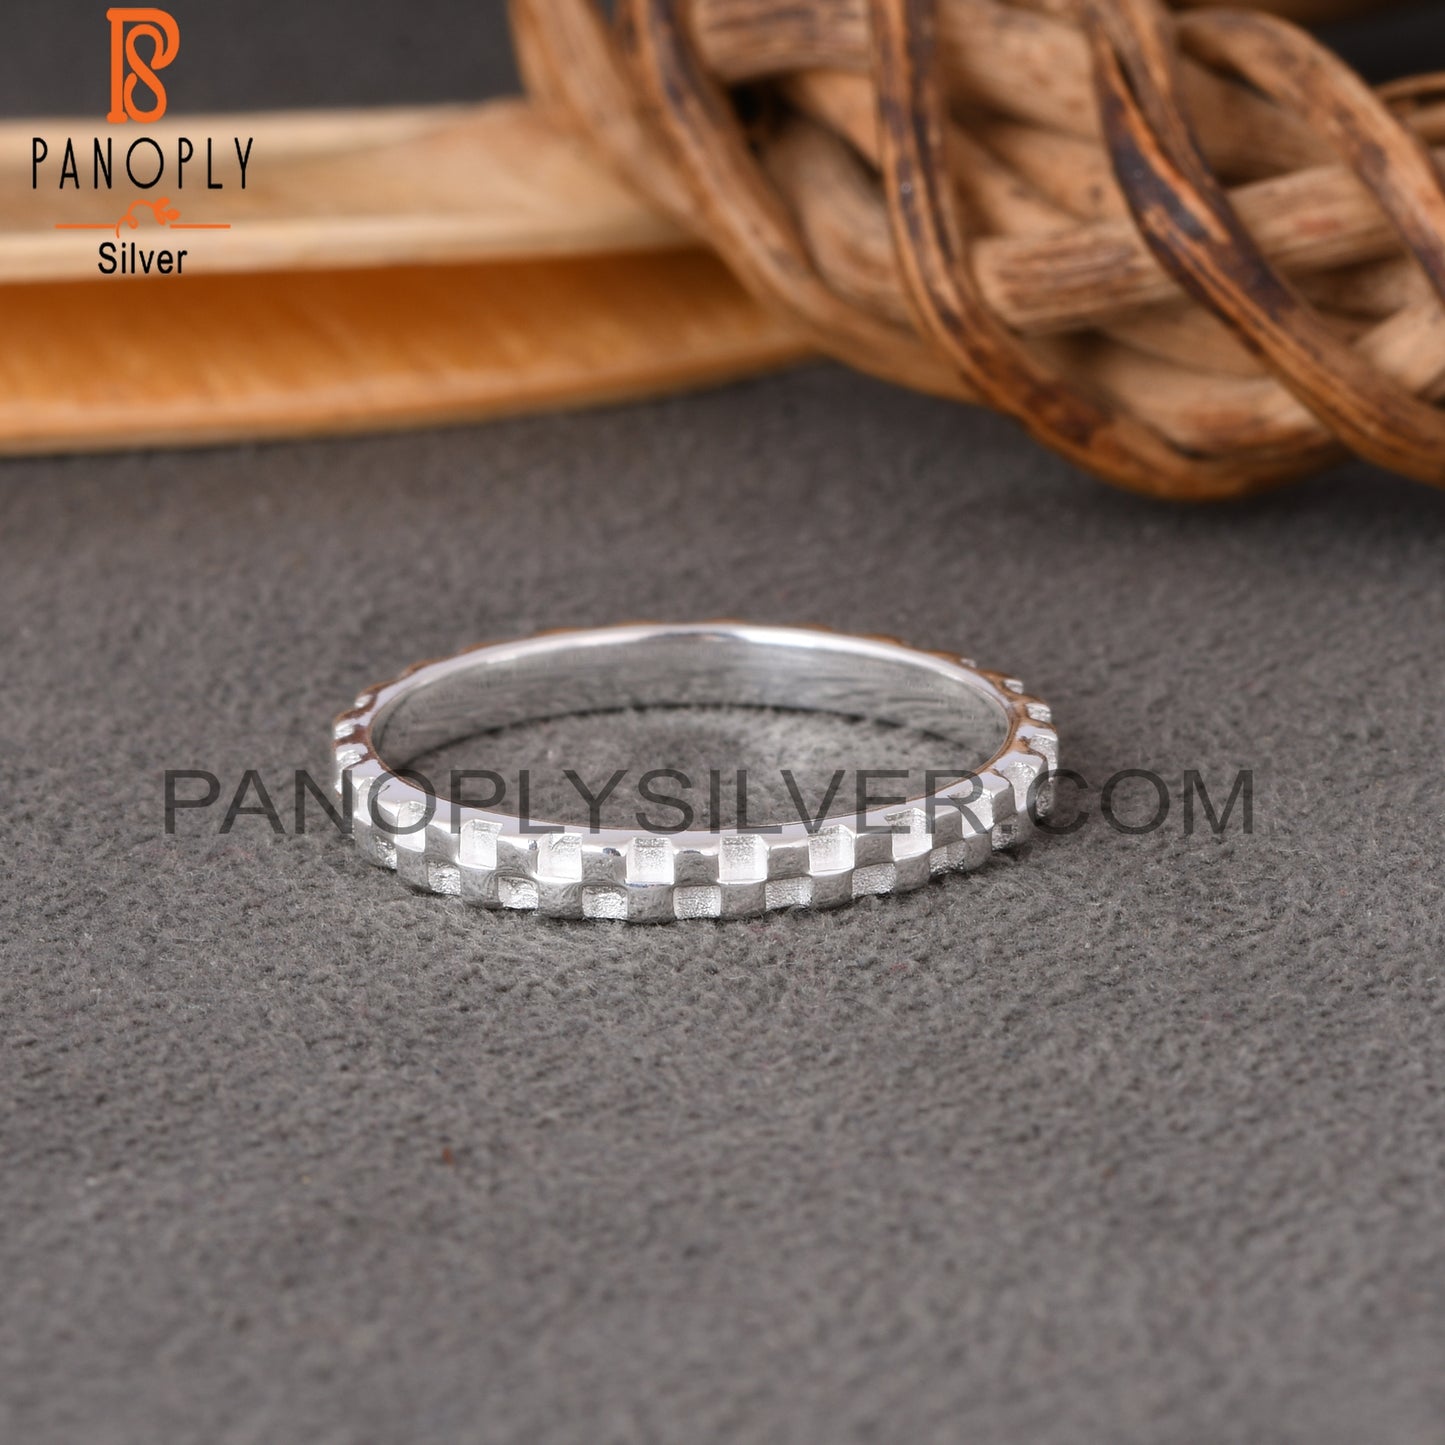 Handmade 925 Sterling Silver Ring For Women Men